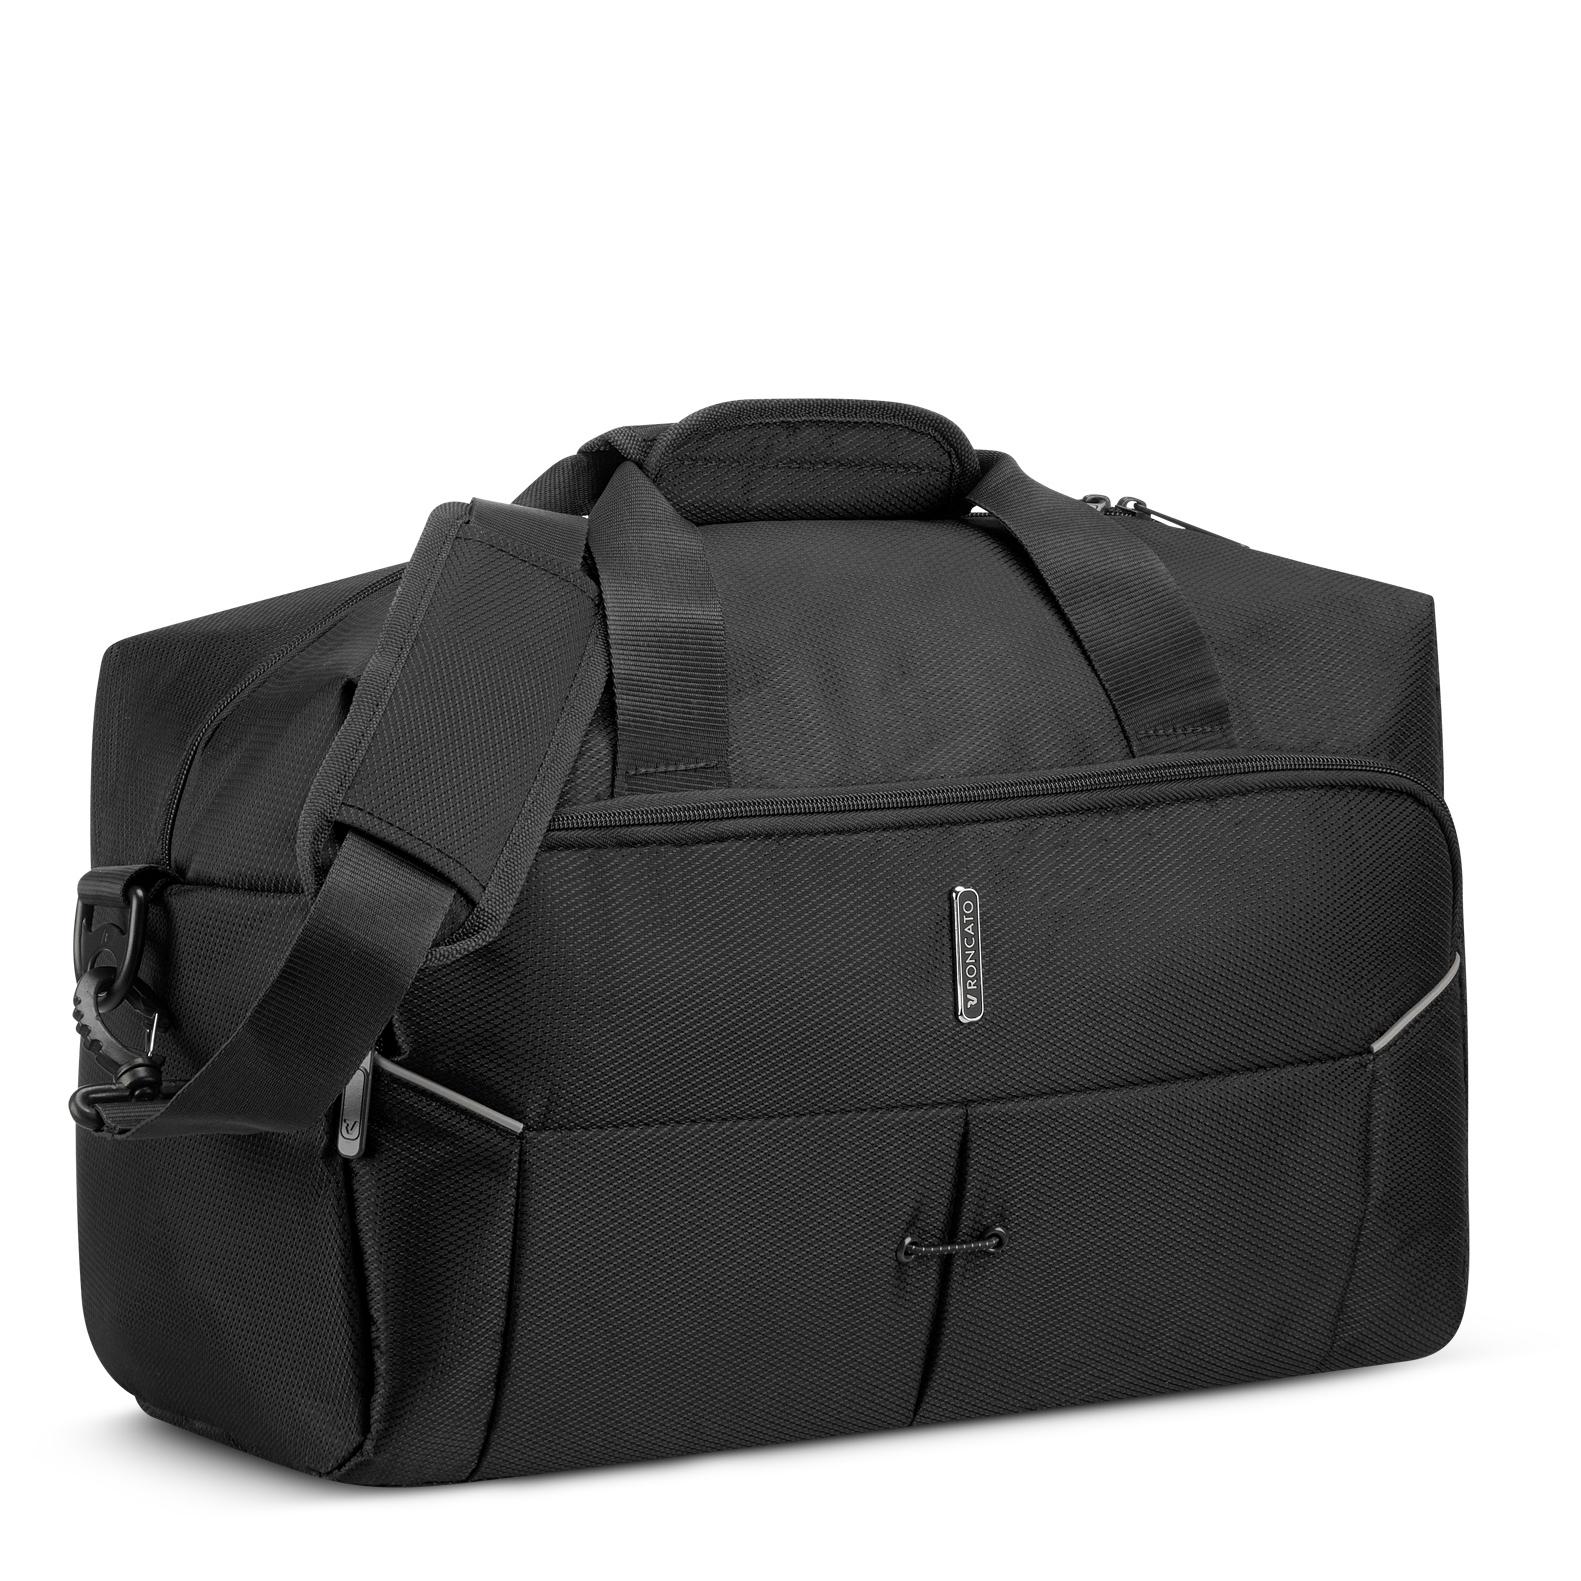 Túi trống RONCATO IRONIK 2.0 RYANAIR CABIN BAG, Vải chống thấm nước, thương hiệu Ý